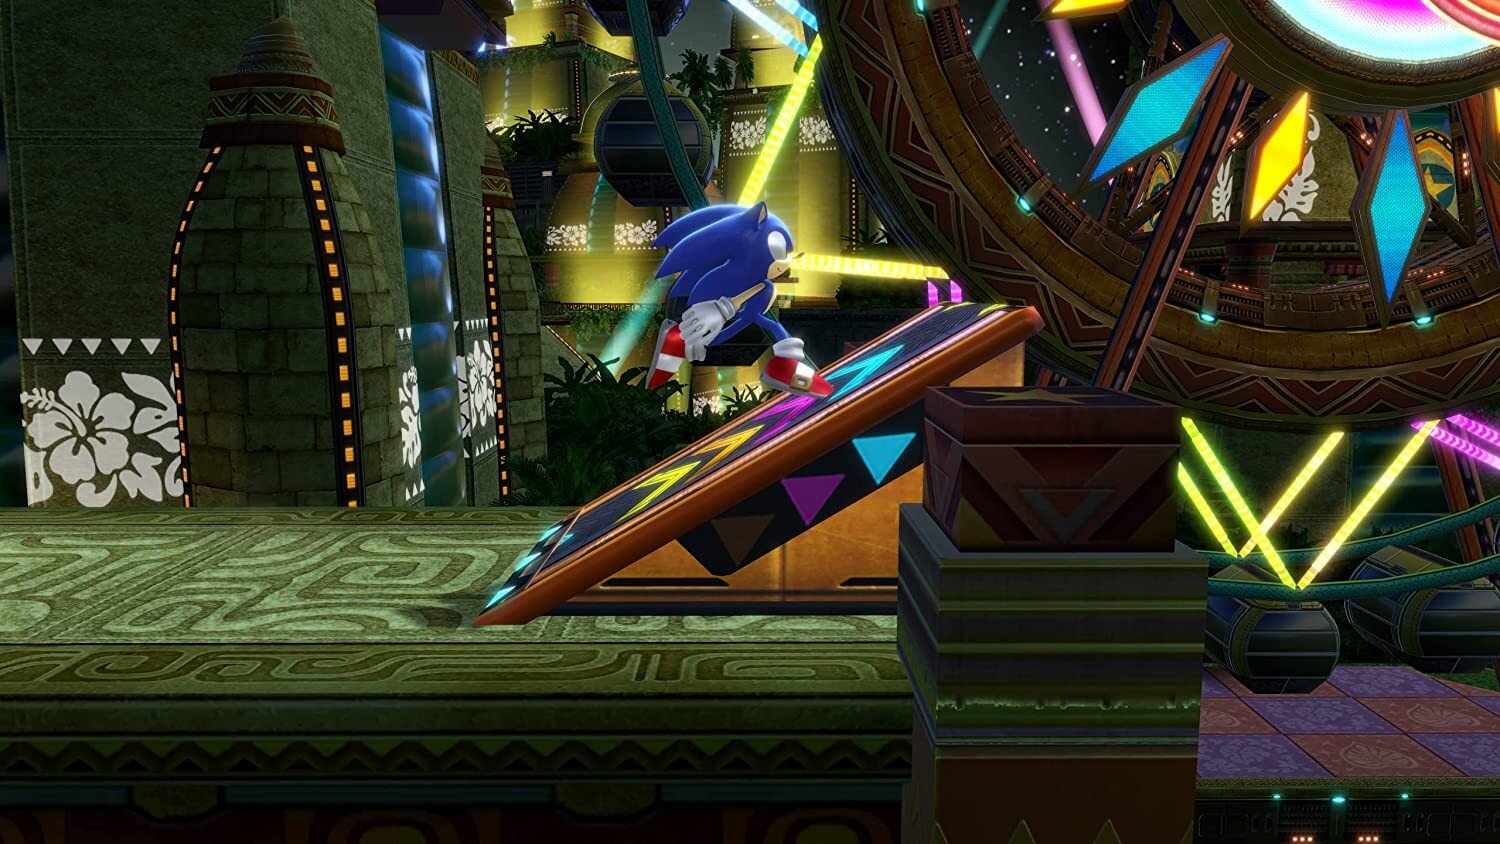 Xbox One / Series X mäng Sonic Colours Ultimate kaina ir informacija | Kompiuteriniai žaidimai | pigu.lt